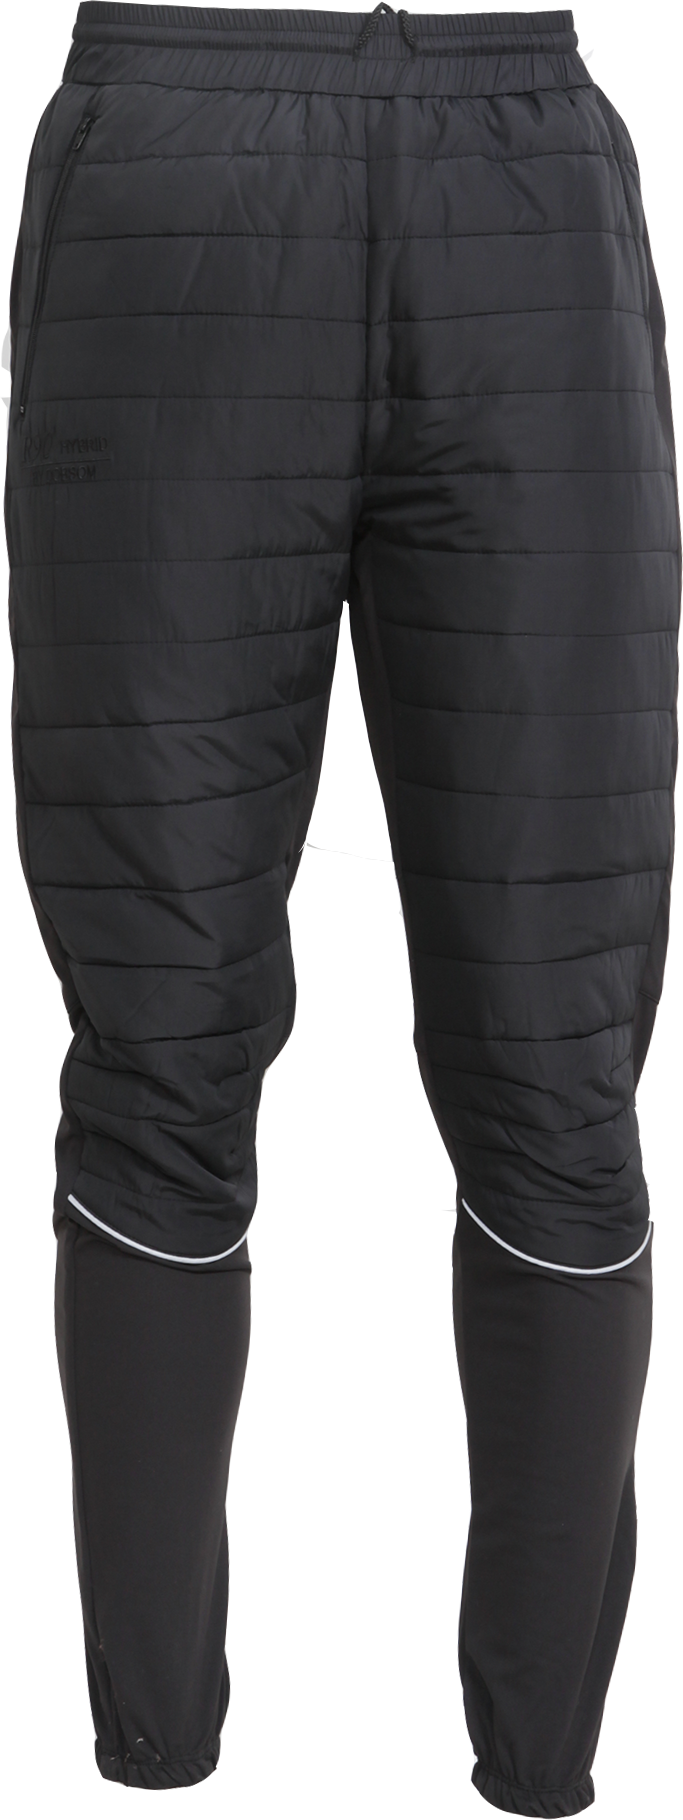 Dobsom Men’s R90 Hybrid Pants Black